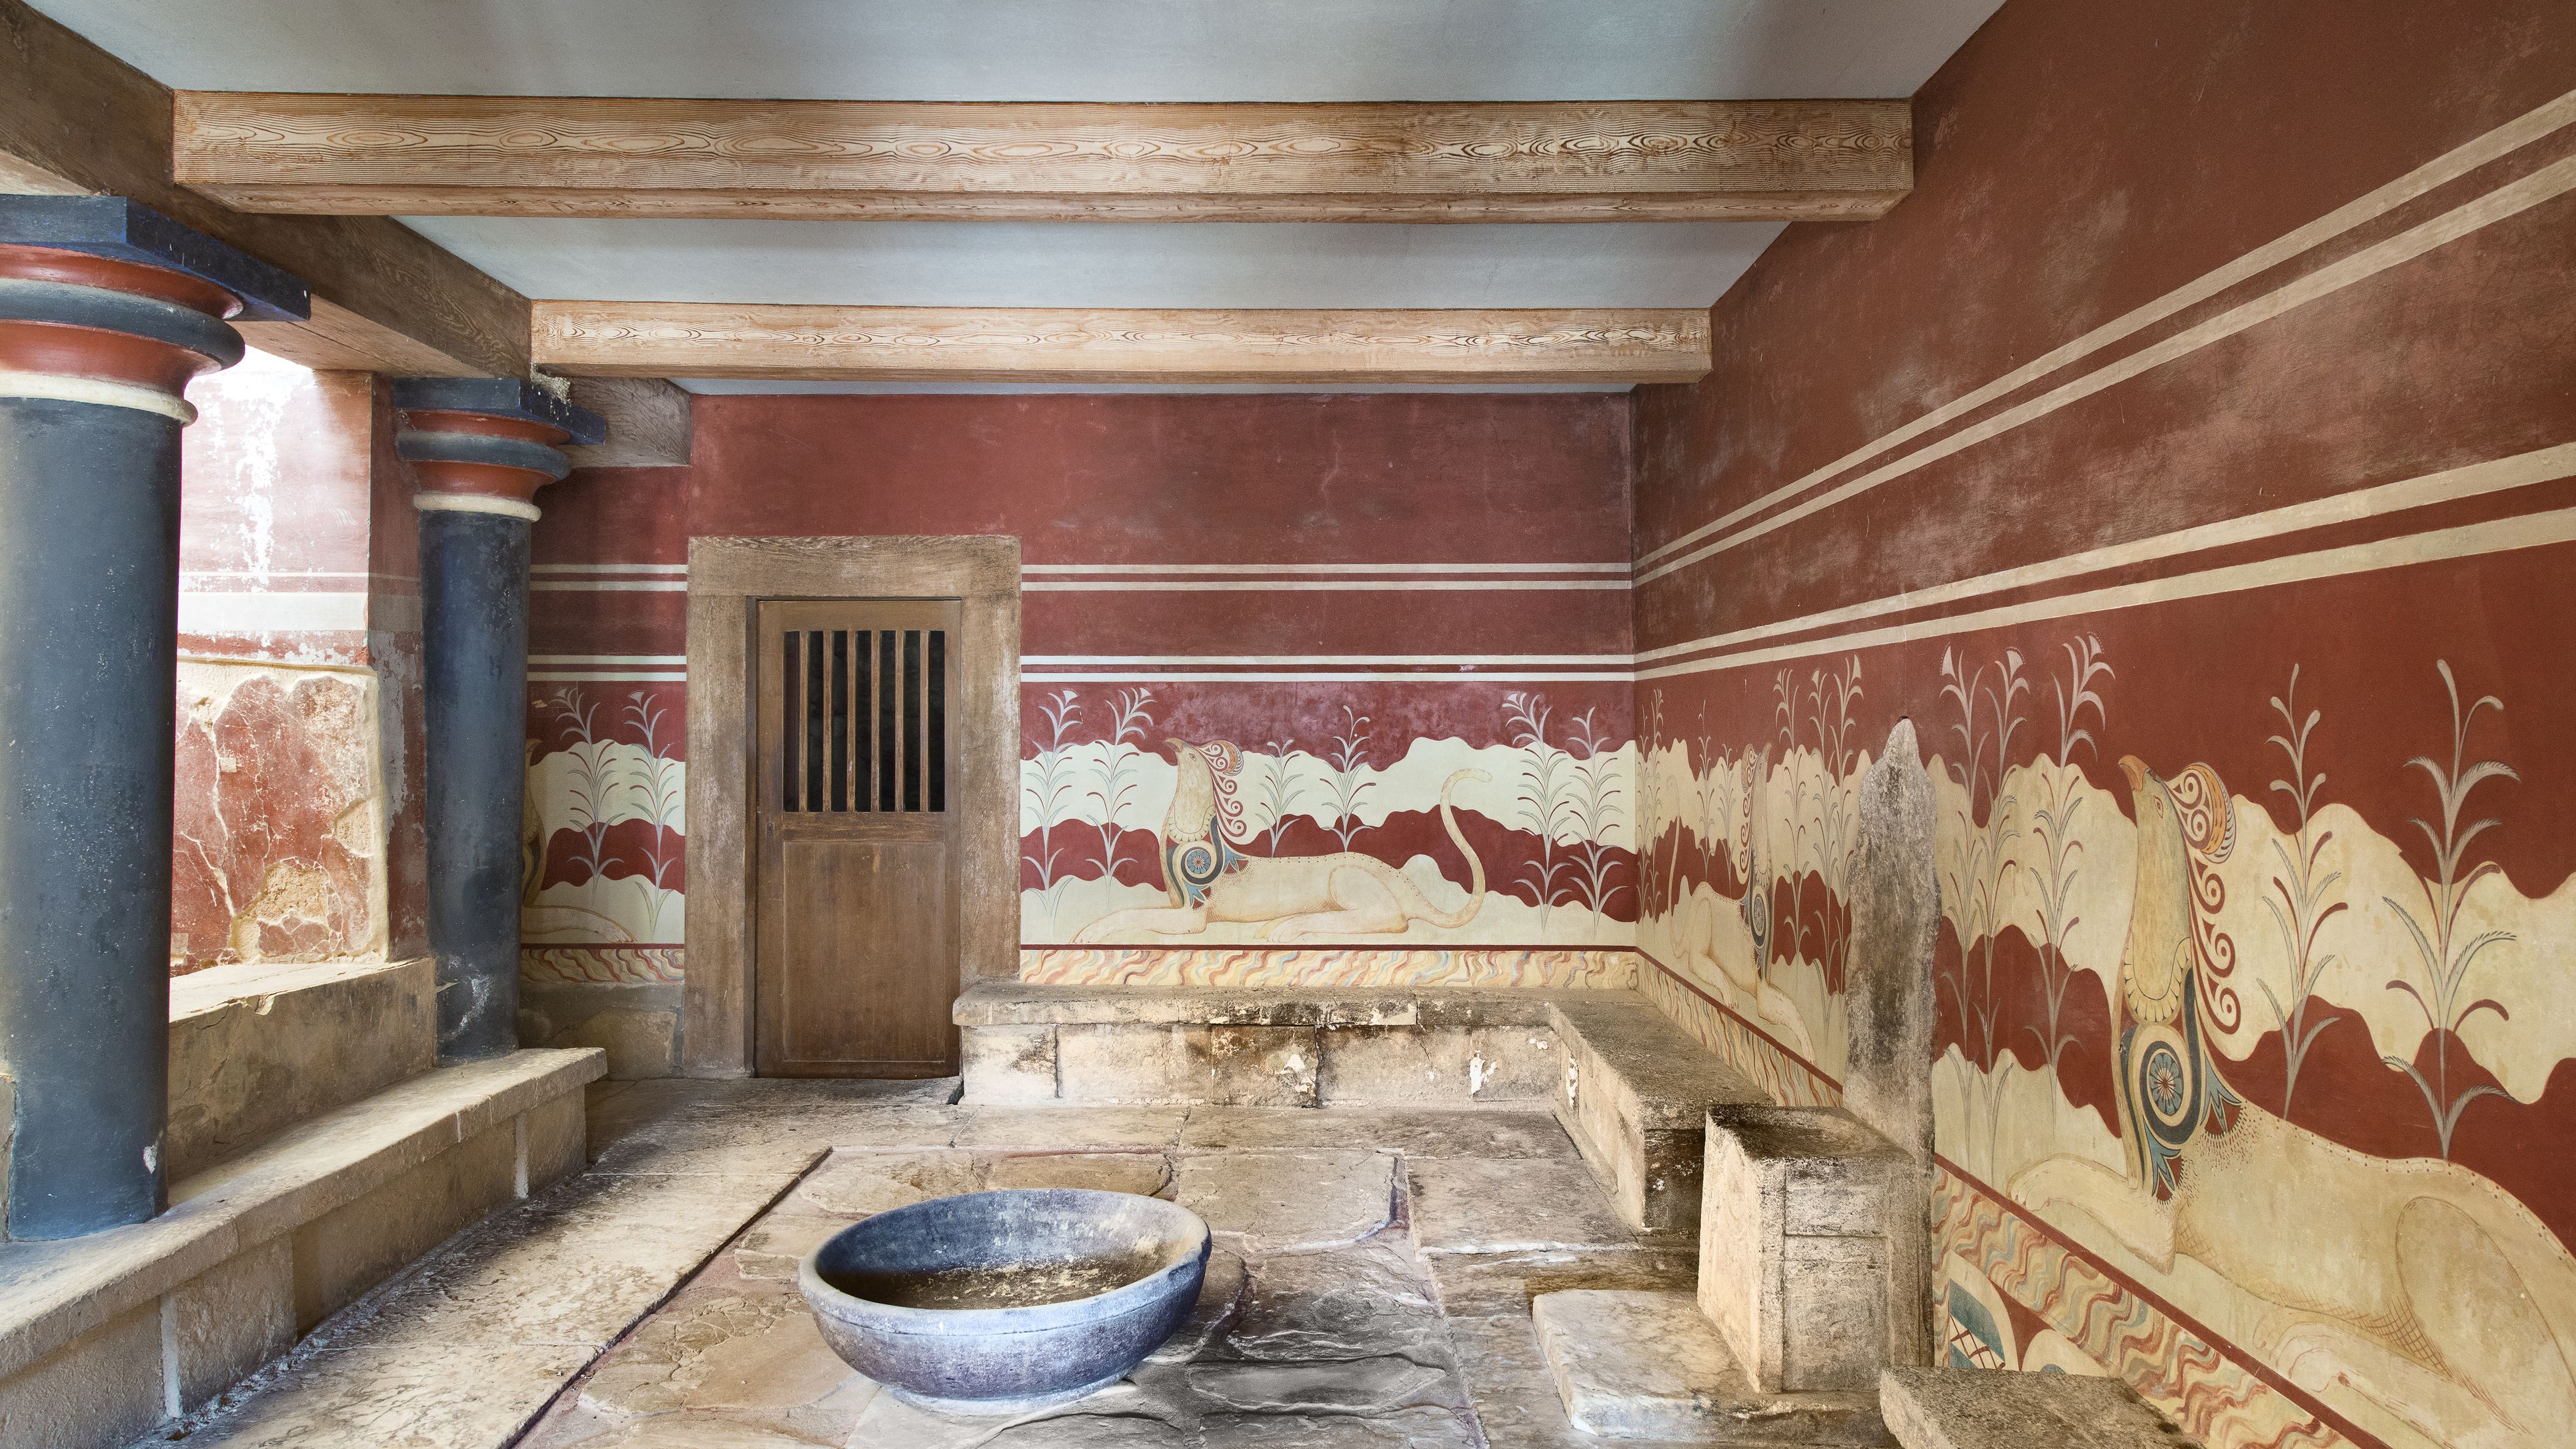 throne-room-palace-of-knossos-crete-greece-185757408-5763ee8b3df78c98dc2de899.jpg